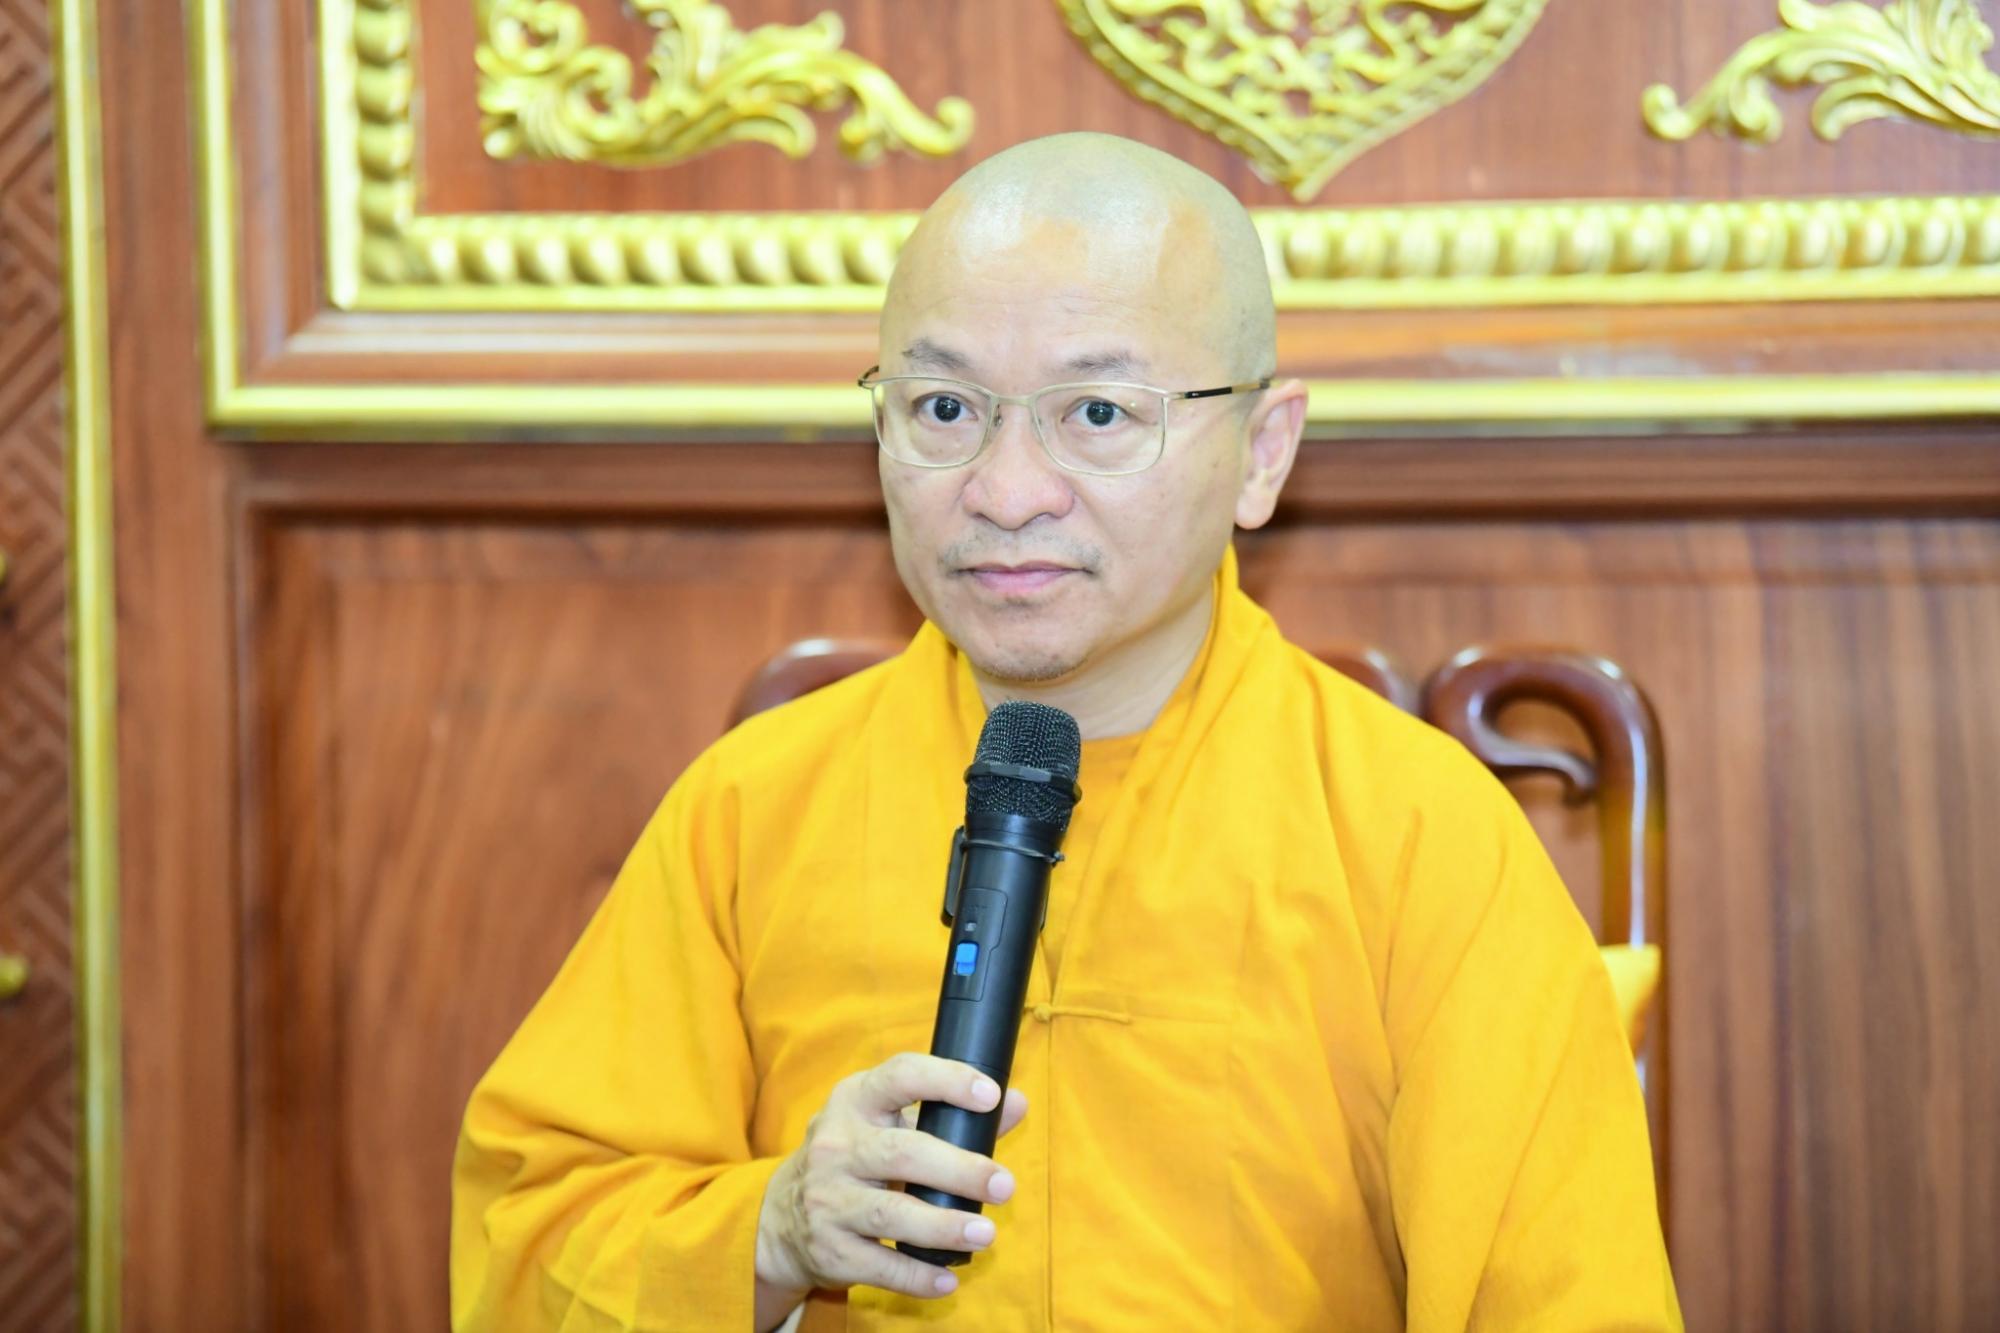 Đạo tràng Tâm Sen (Hà Nội) thăm chùa Giác Ngộ (quận 10, TP.HCM)